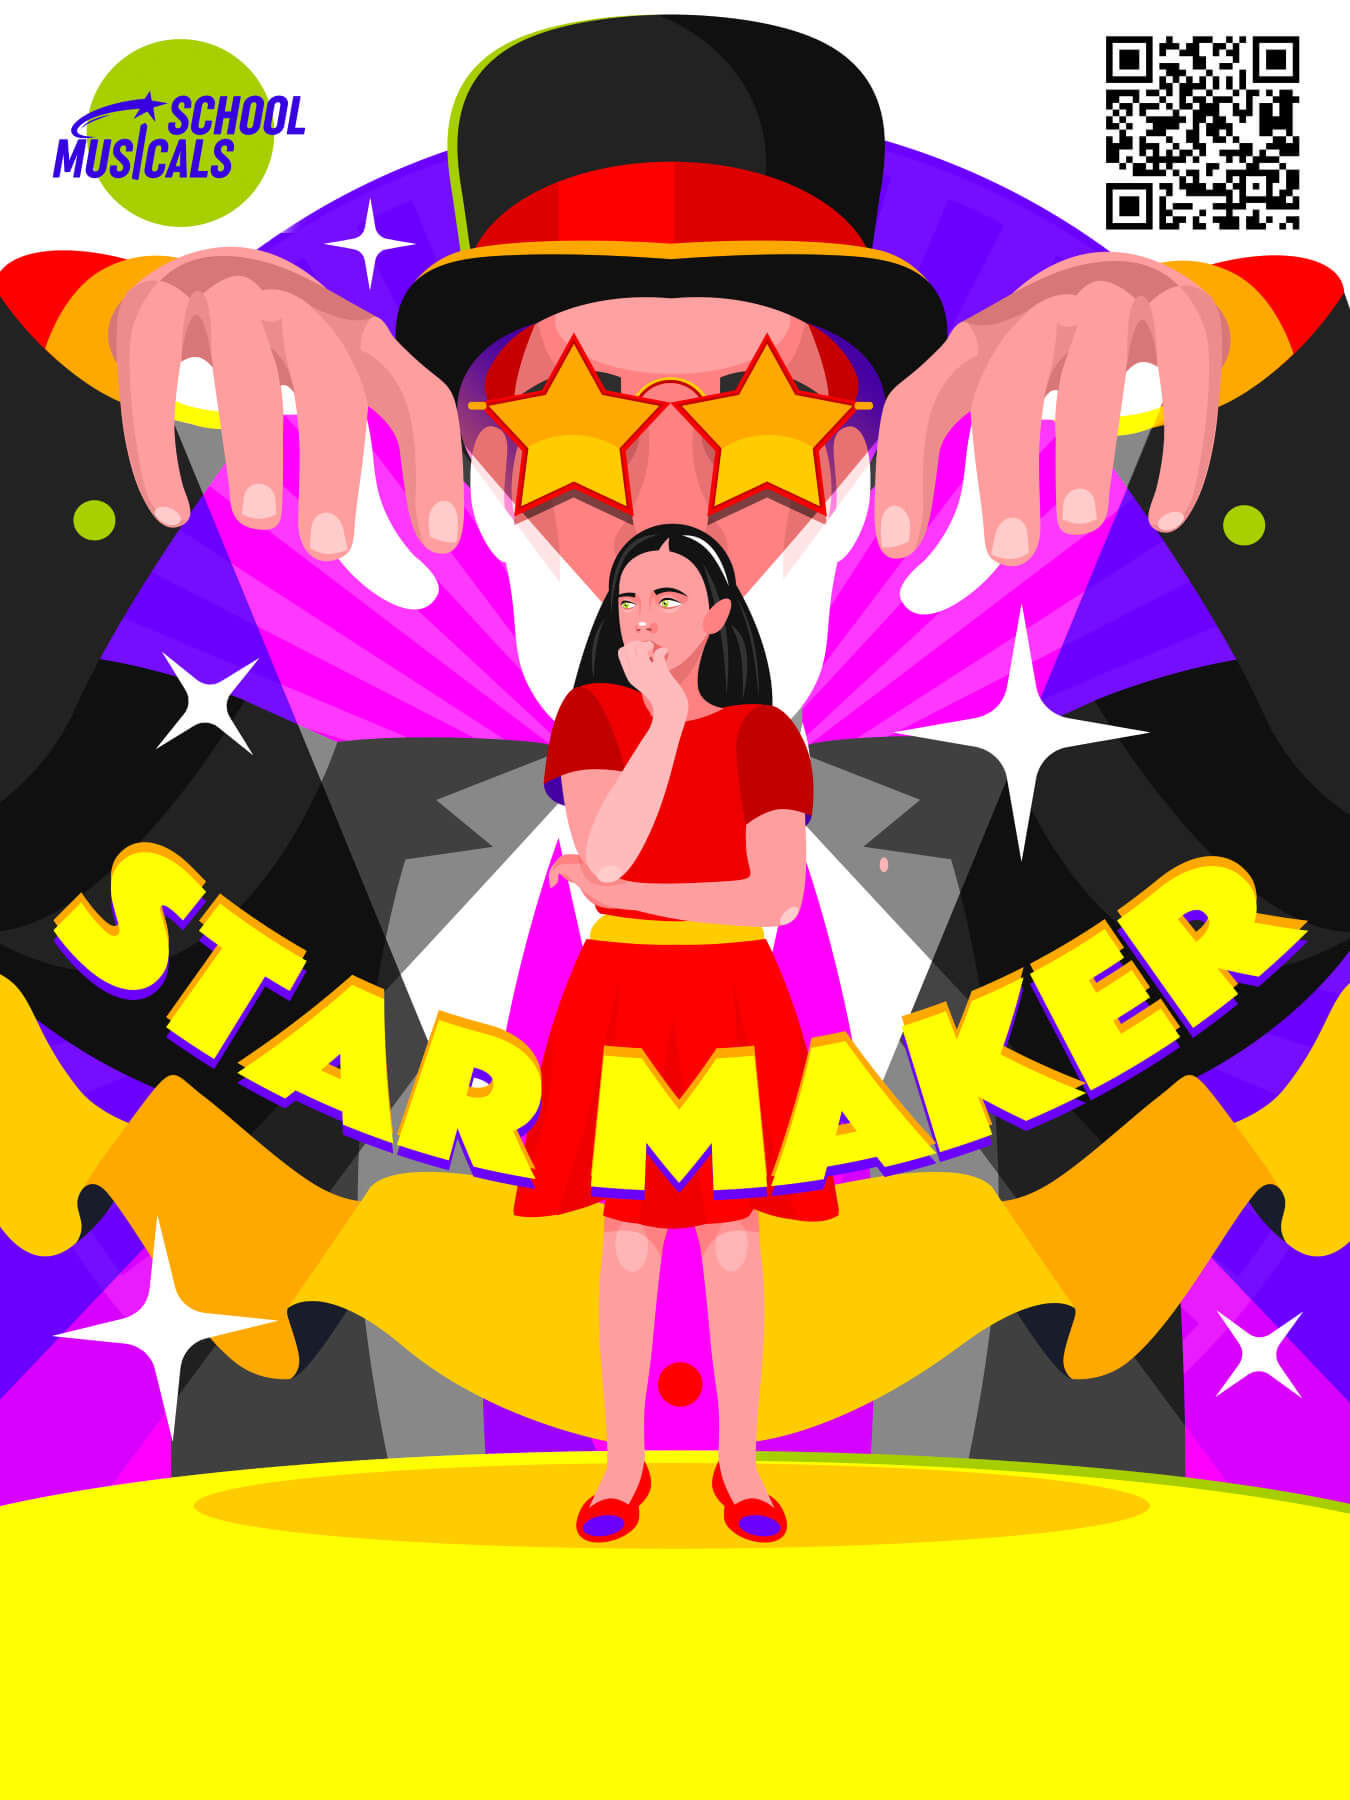 Star Maker – Years 8-9 (Intermediate/Middle School)